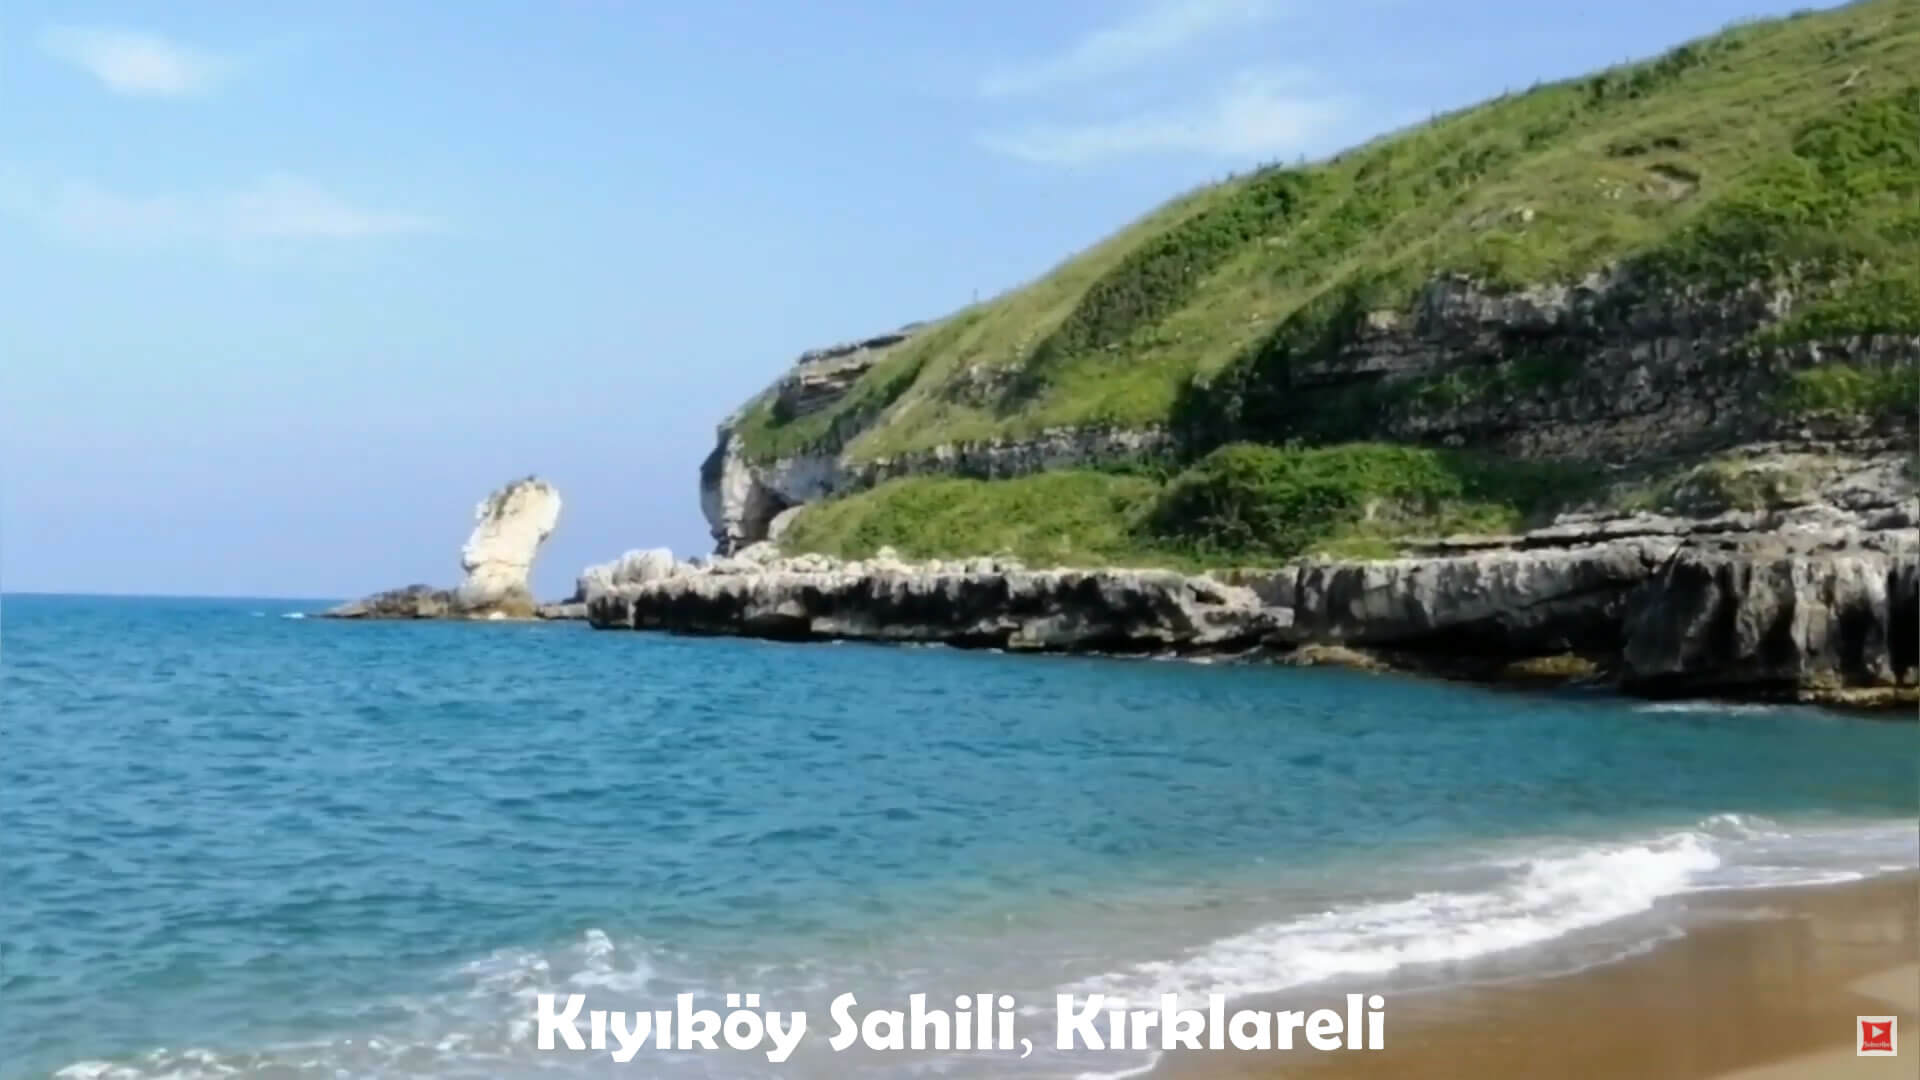 Kiyikoy Coast, Kirklareli